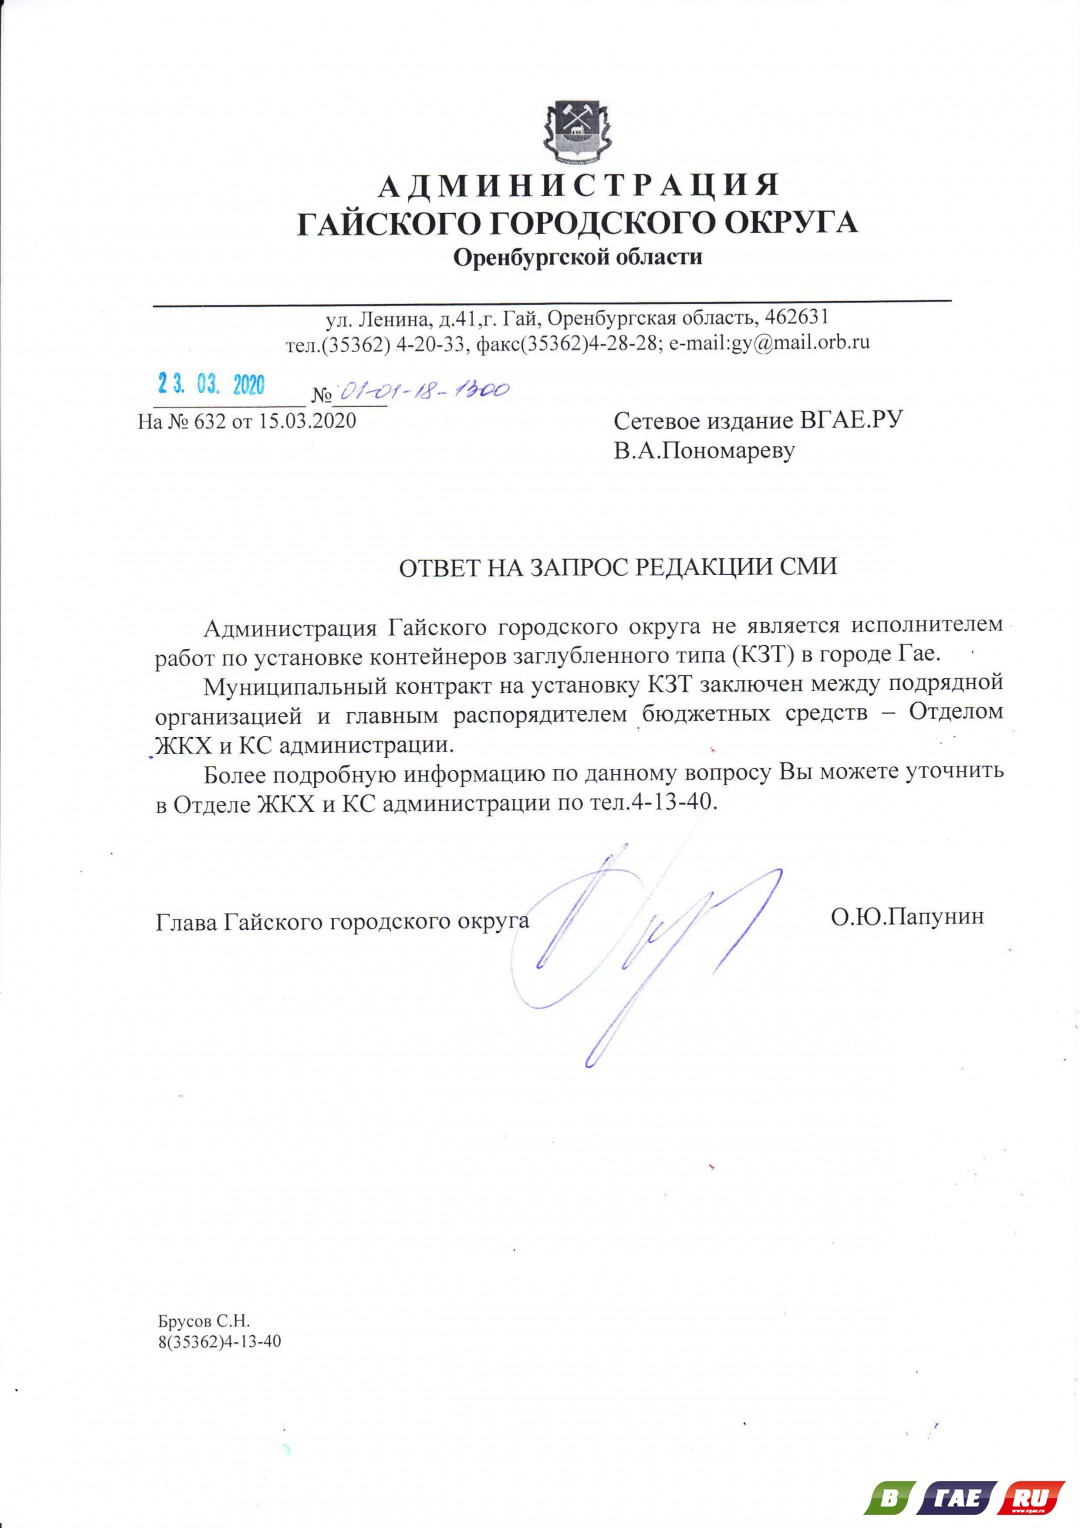 Всплывшие контейнеры приняли и оплатили 3 163 526,00 руб.